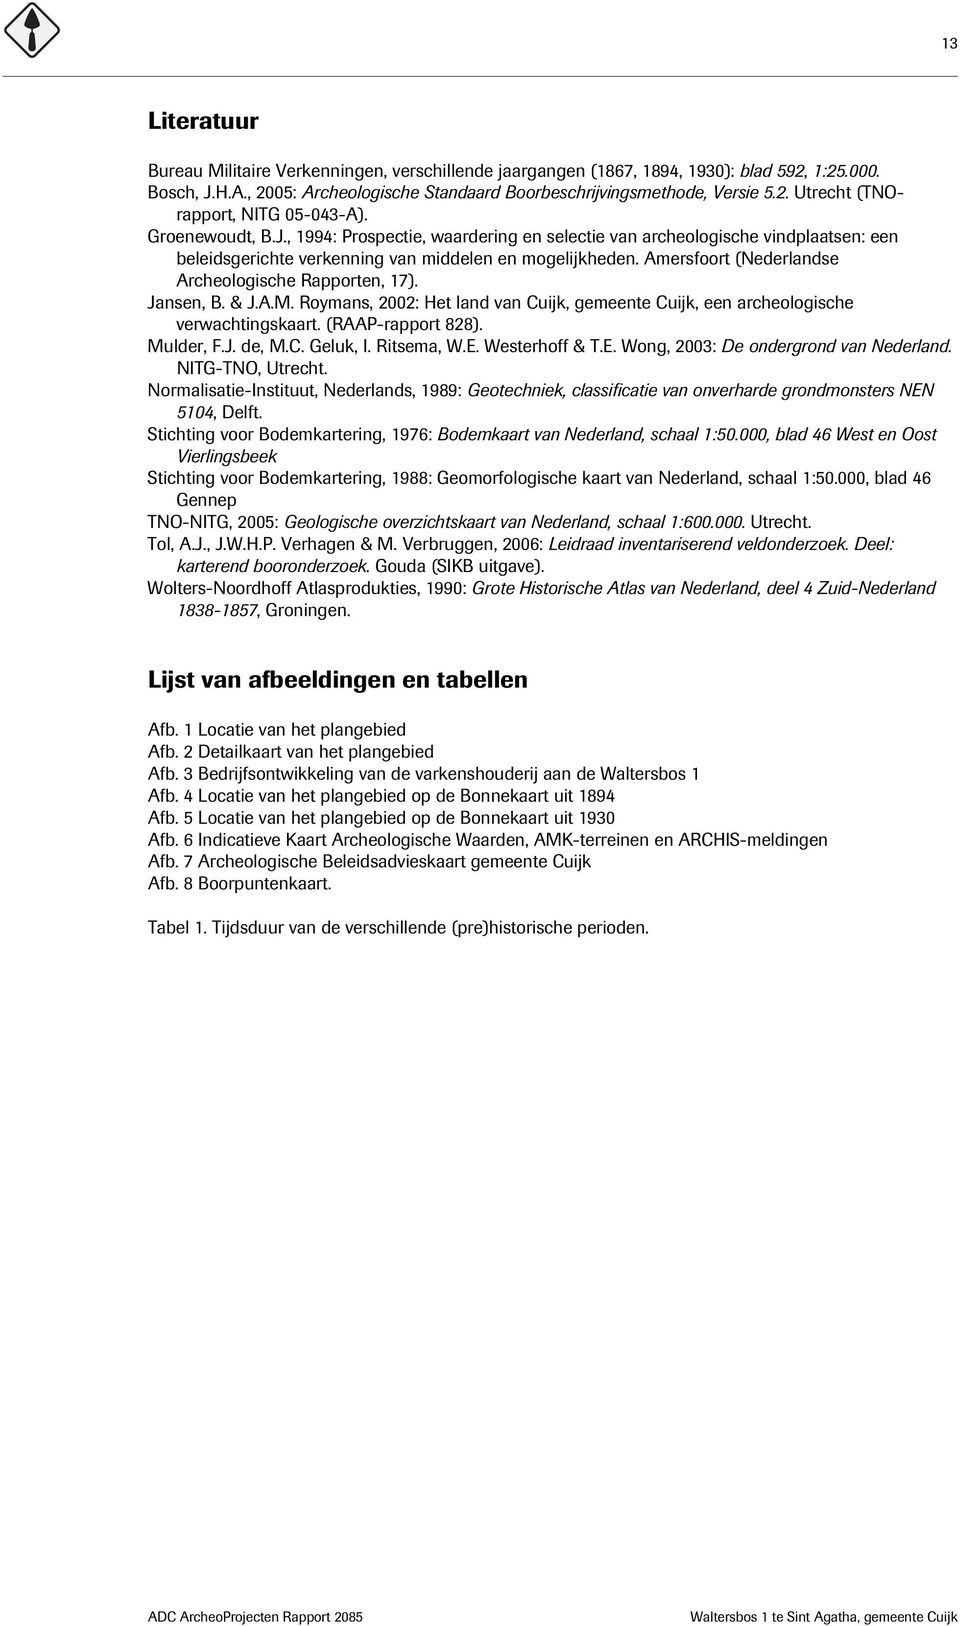 Amersfoort (Nederlandse Archeologische Rapporten, 17). Jansen, B. & J.A.M. Roymans, 2002: Het land van Cuijk, gemeente Cuijk, een archeologische verwachtingskaart. (RAAP-rapport 828). Mulder, F.J. de, M.